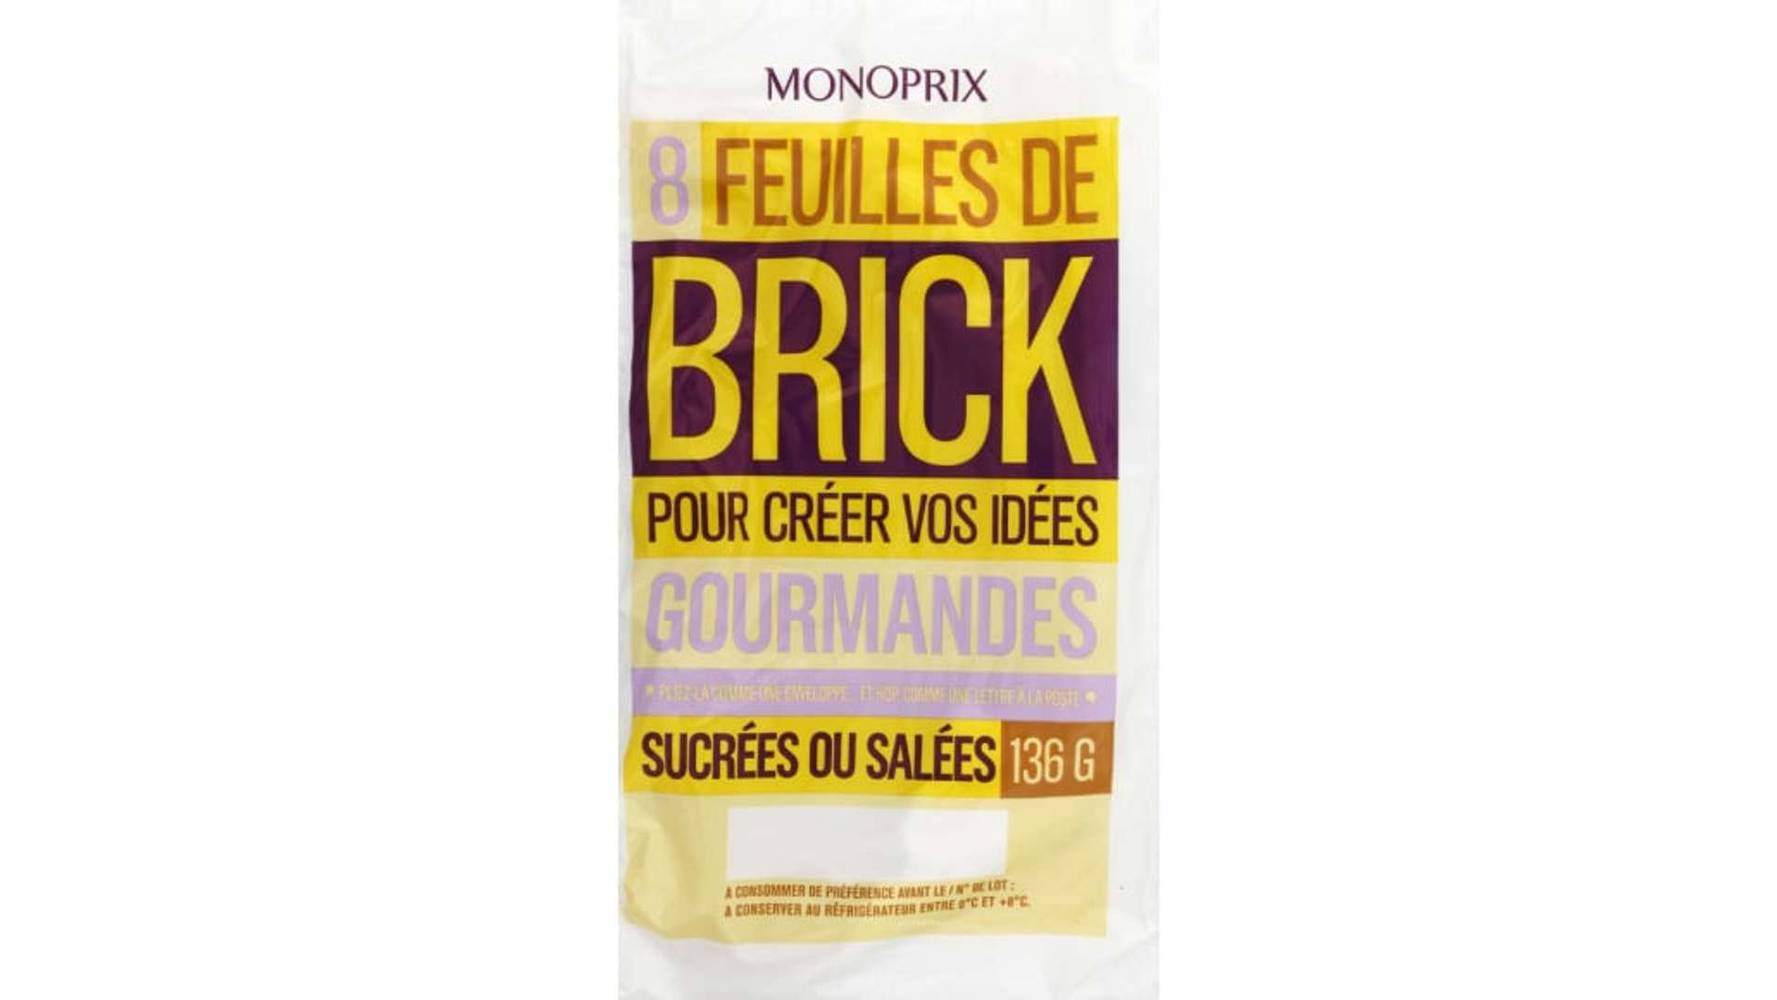 Monoprix Feuilles de brick Le sachet de 8, 136g